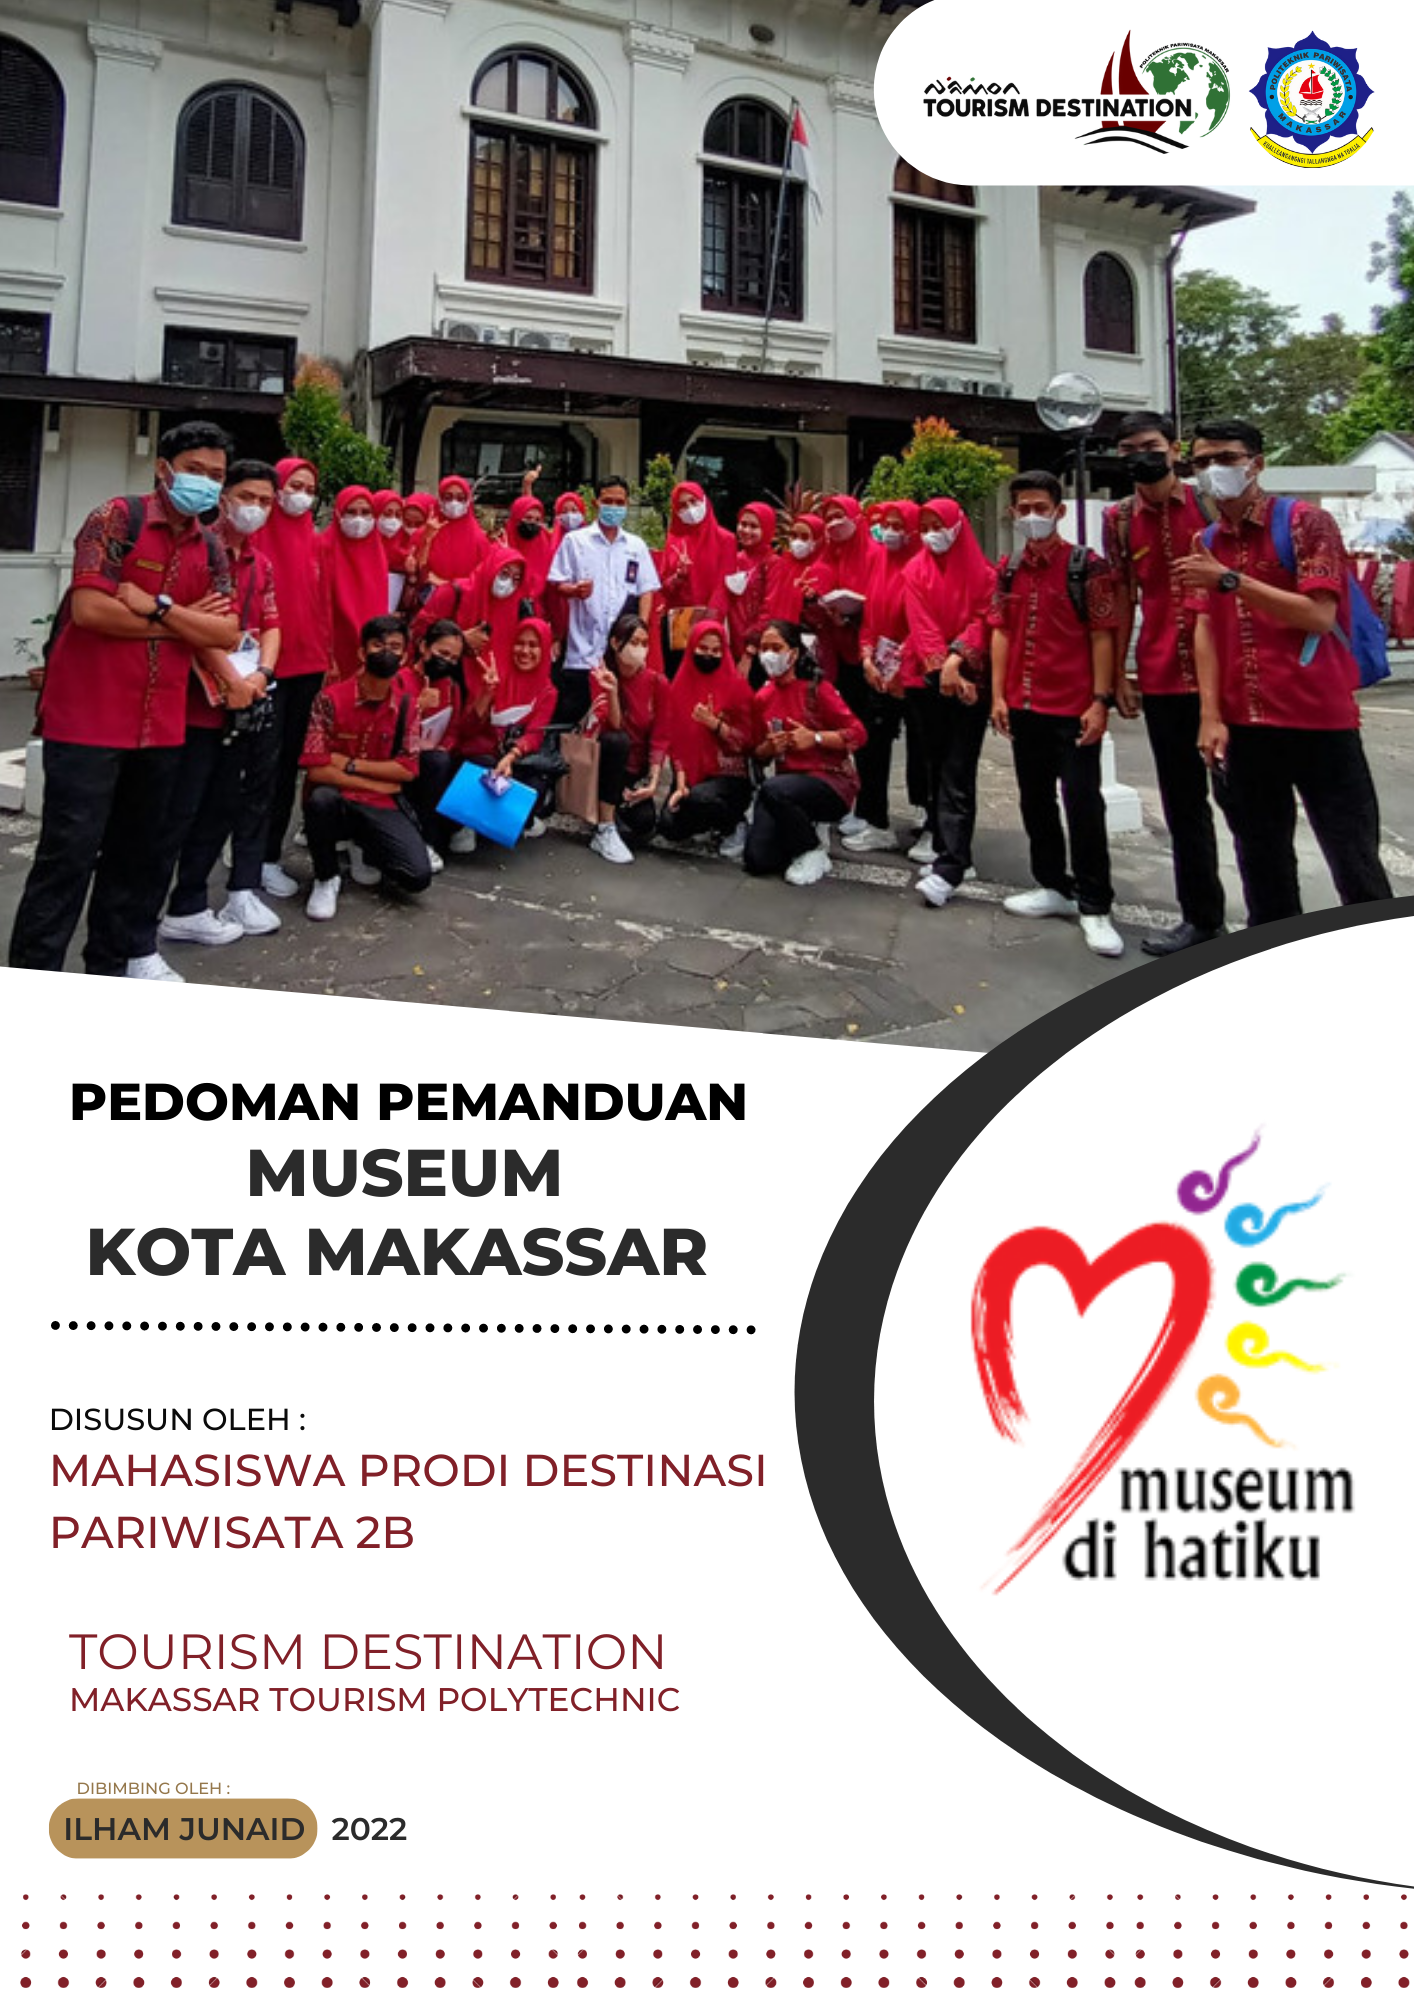 Mahasiswa Prodi DPA Dalam Pengelolaan Destinasi di Museum Kota Makassar